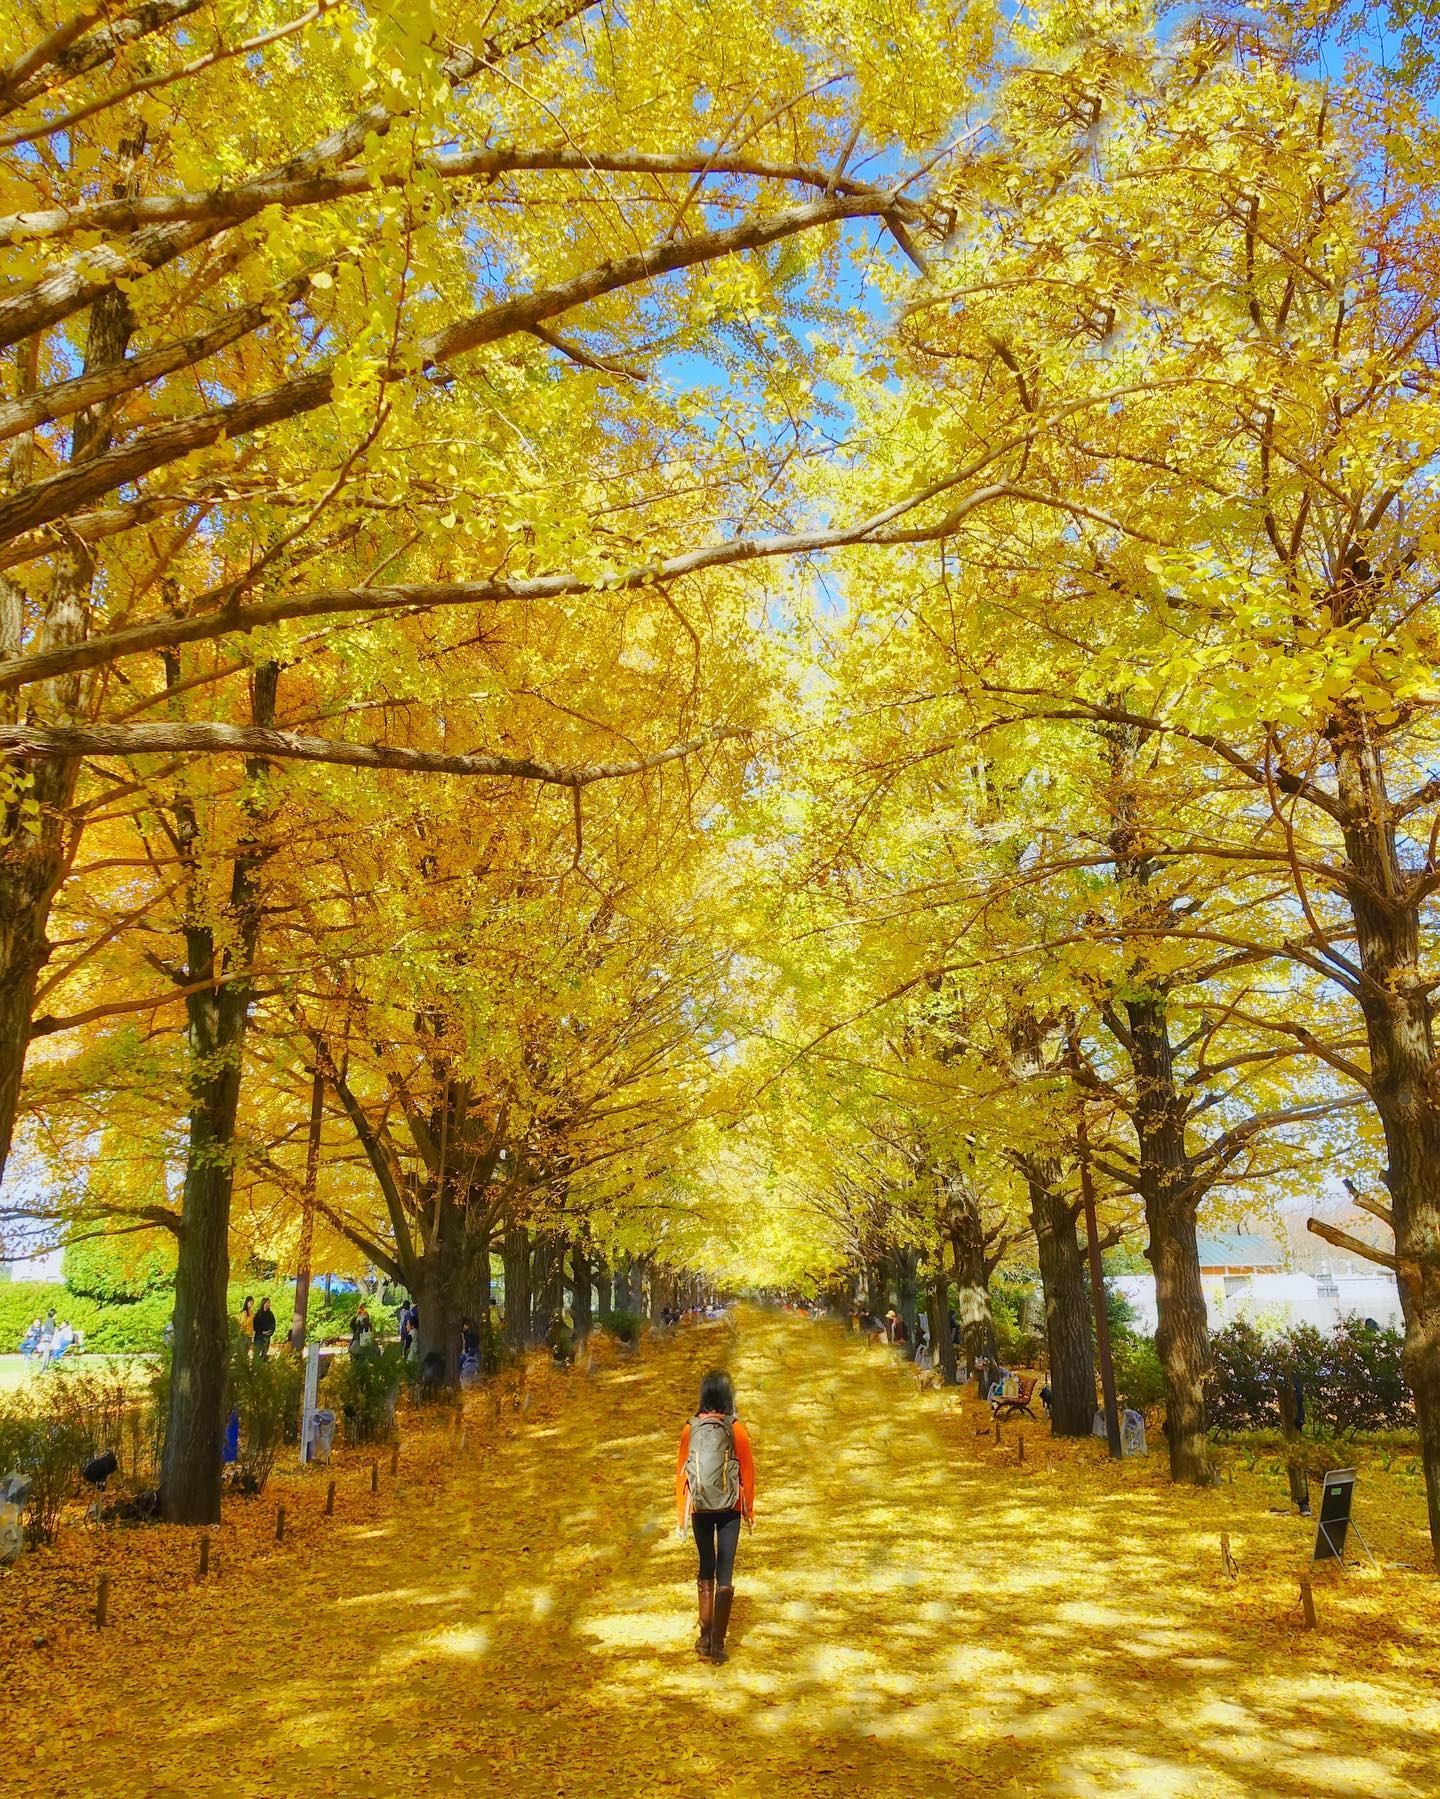 🇯🇵【東京 Tokyo】昭和紀念公園 Showa Kinen Park
🍁東京首選銀杏名所之一的昭和公園，秋季主打『銀杏隧道』，搭配藍天，走在金黃包圍的步道上非常夢幻，圖文昭島口旁
🏮著名「日本庭園」湖畔紅葉，與廣大園區中的紅衫，榉樹等豐富景觀也都不容錯過，推薦結合野餐，划船，騎車或各種休閒活動

#東京観光 #昭和紀念公園 #國營昭和紀念公園 #賞楓 #銀杏#tokyo #showakinenpark #travelwithmikeanna #把世界當教室🌍 #日本秋季絕景